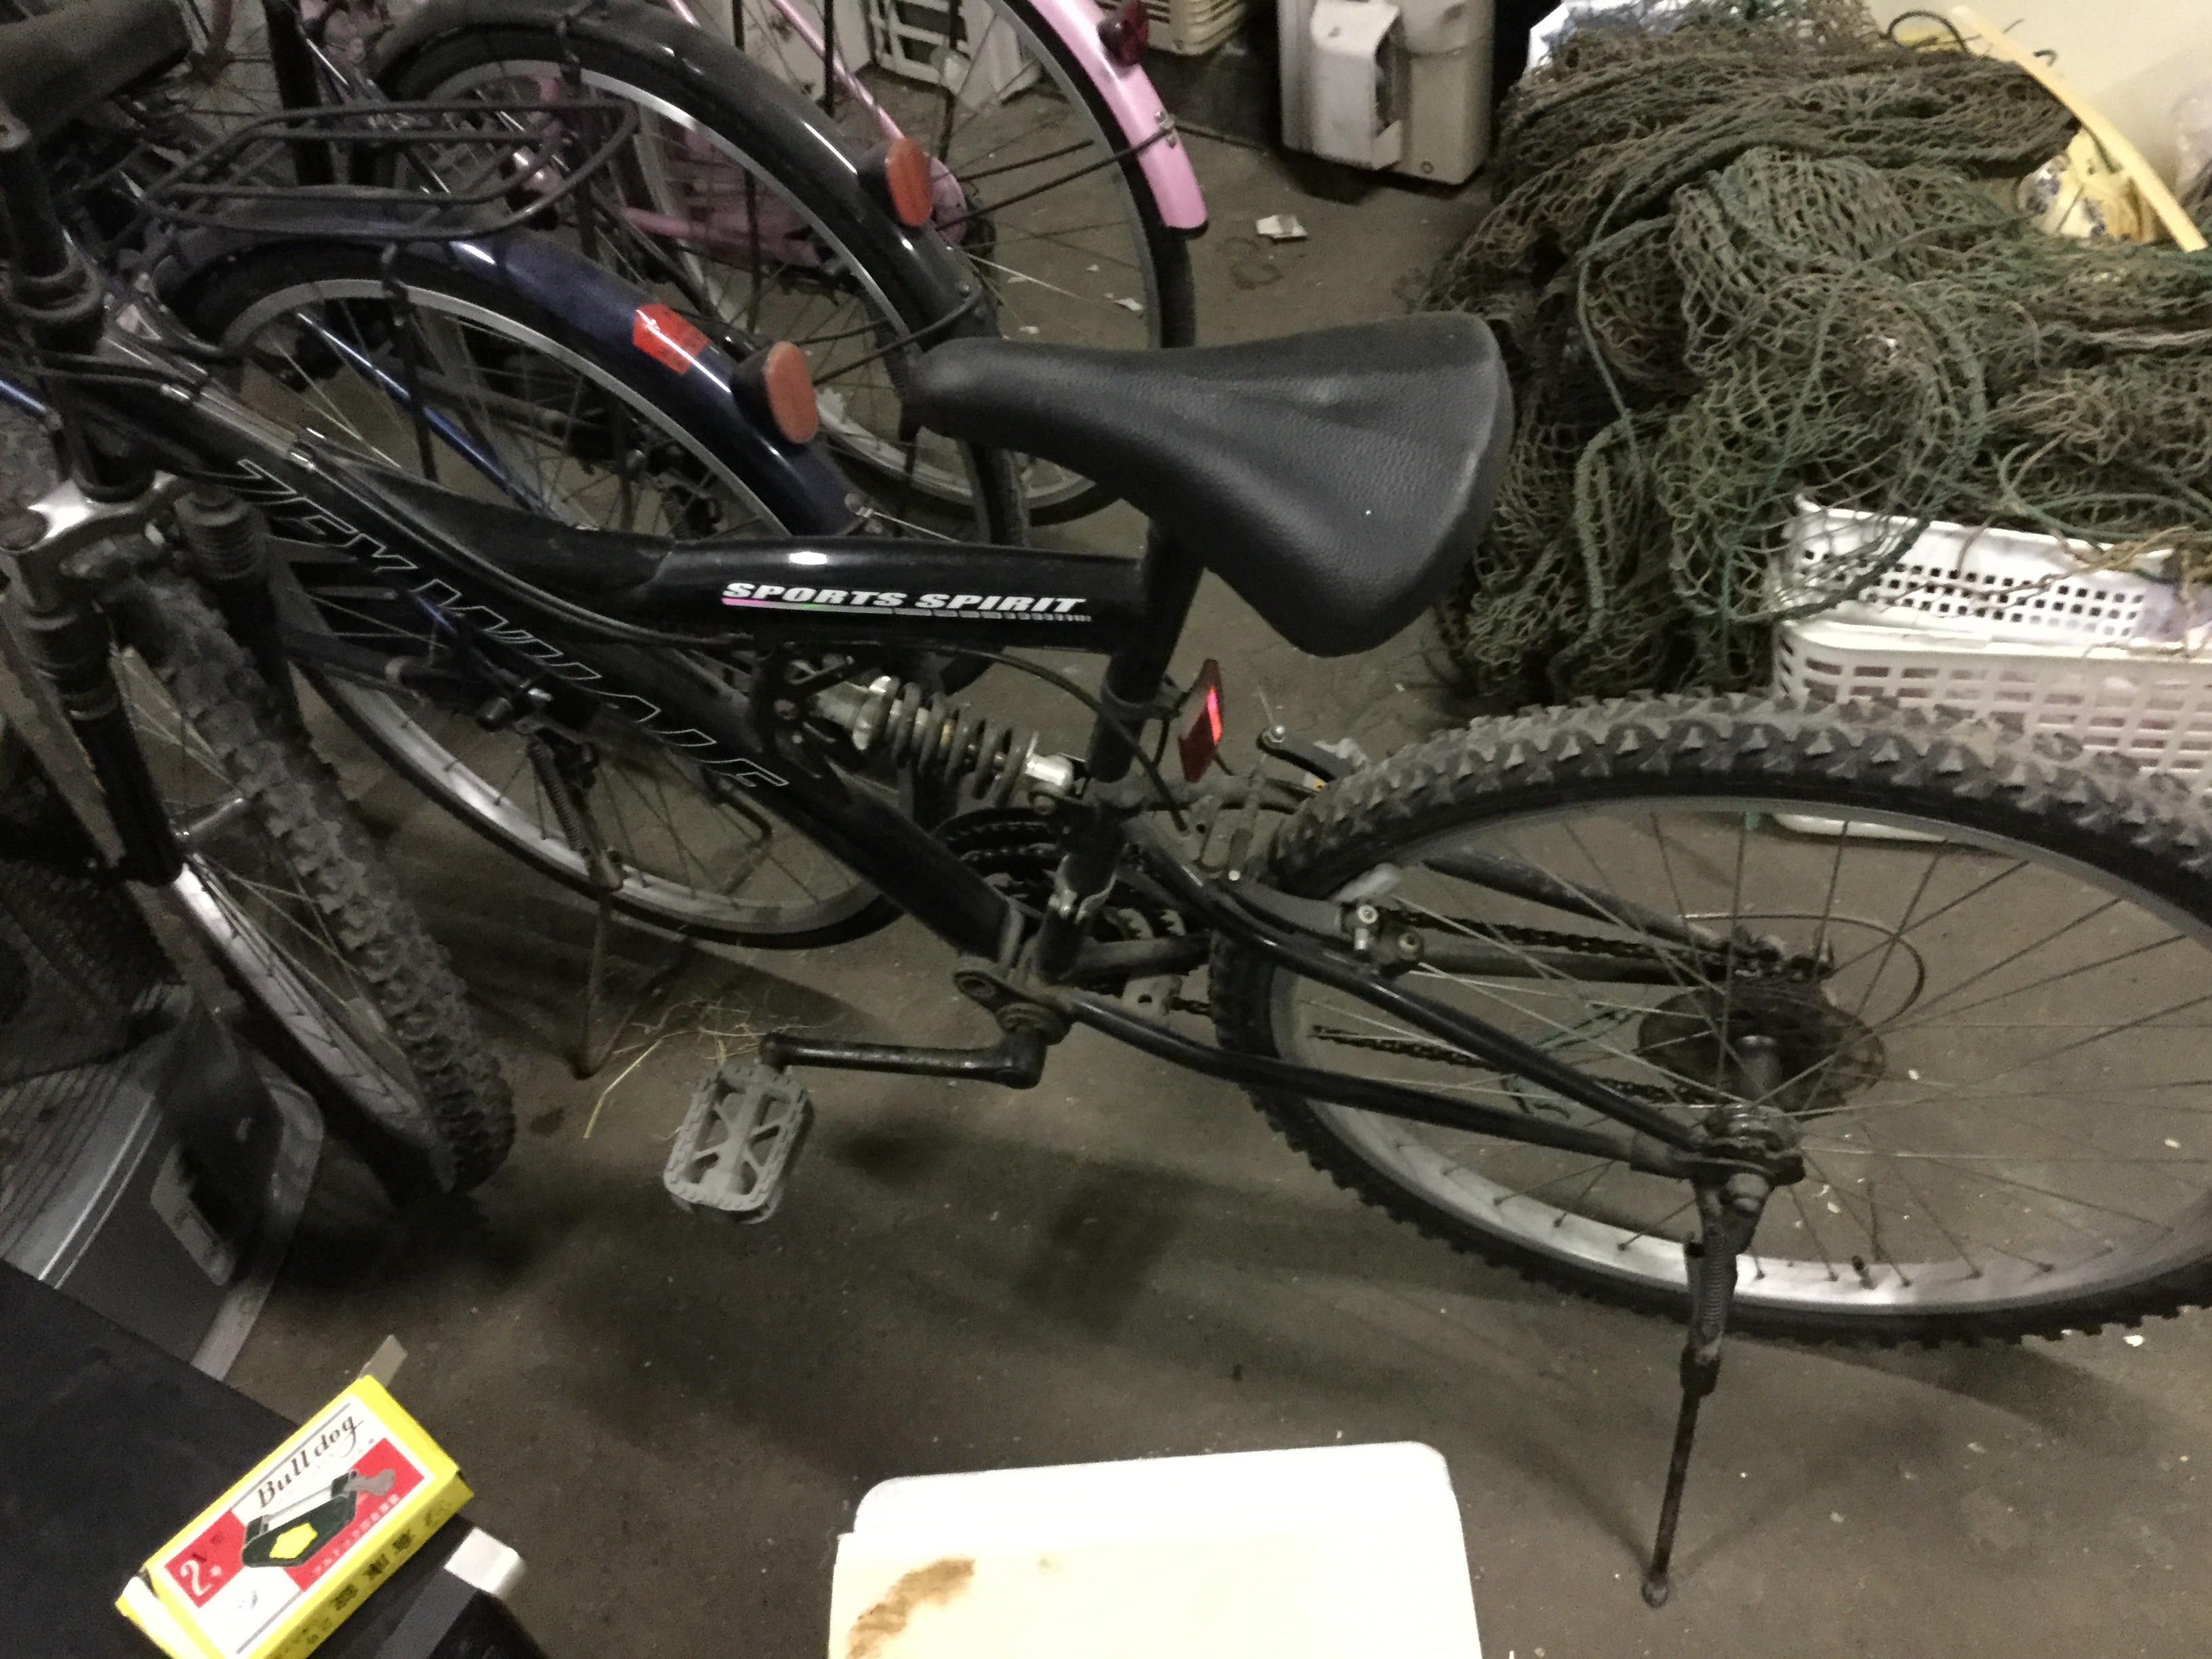 津山市で不用品回収した自転車